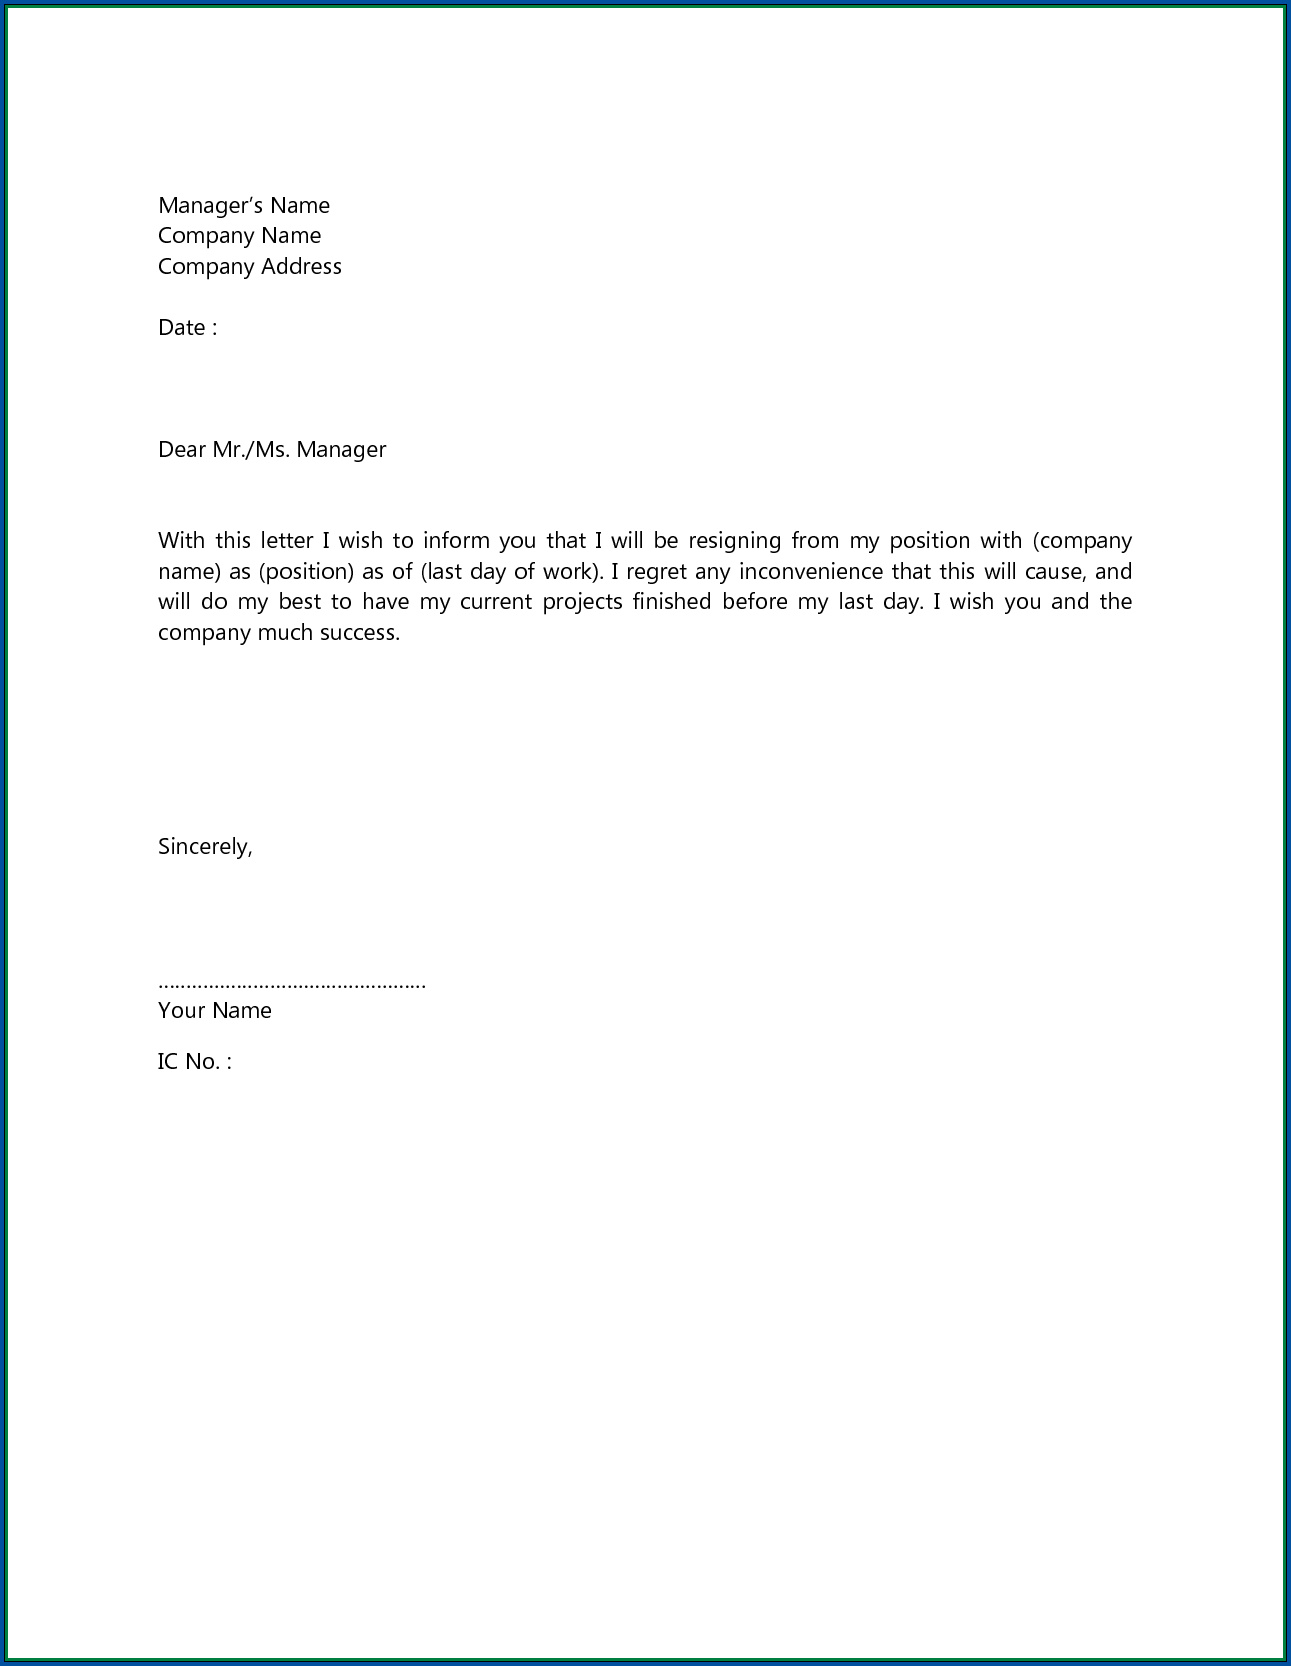 Sample of Short Resignation Letter Template